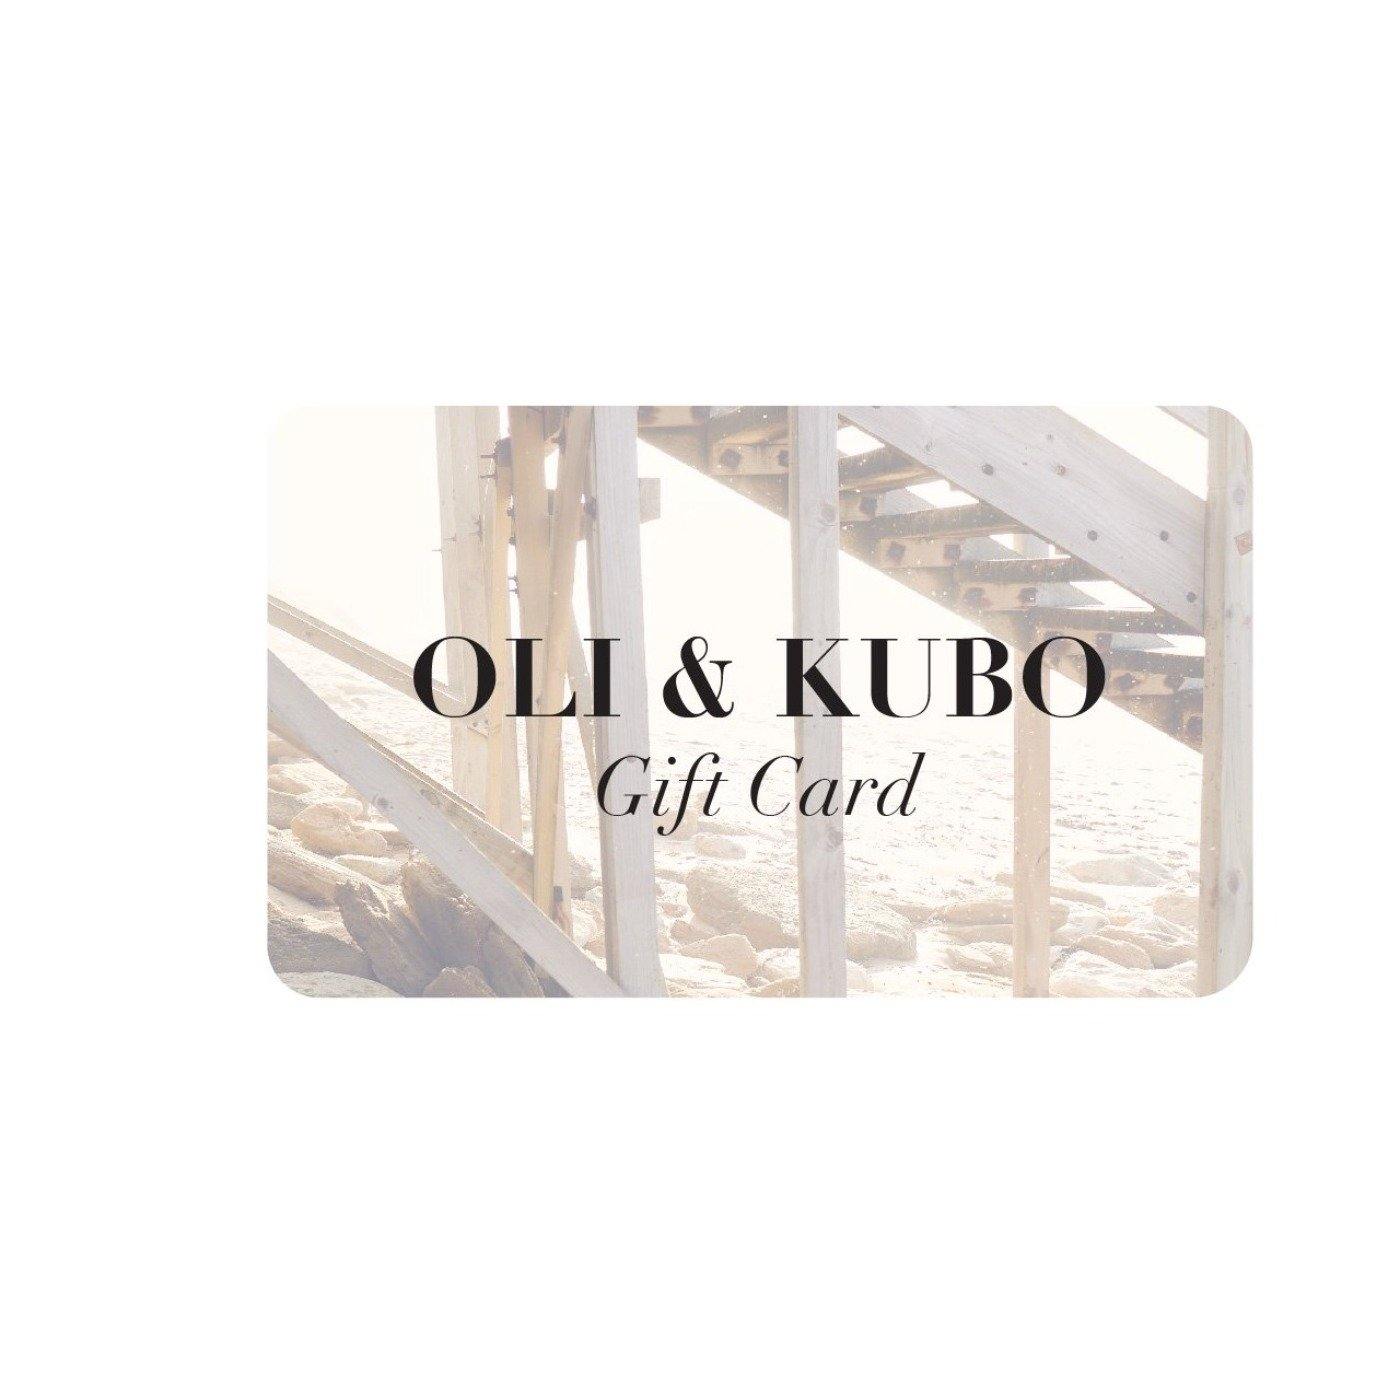 OLI & KUBO Gift Card